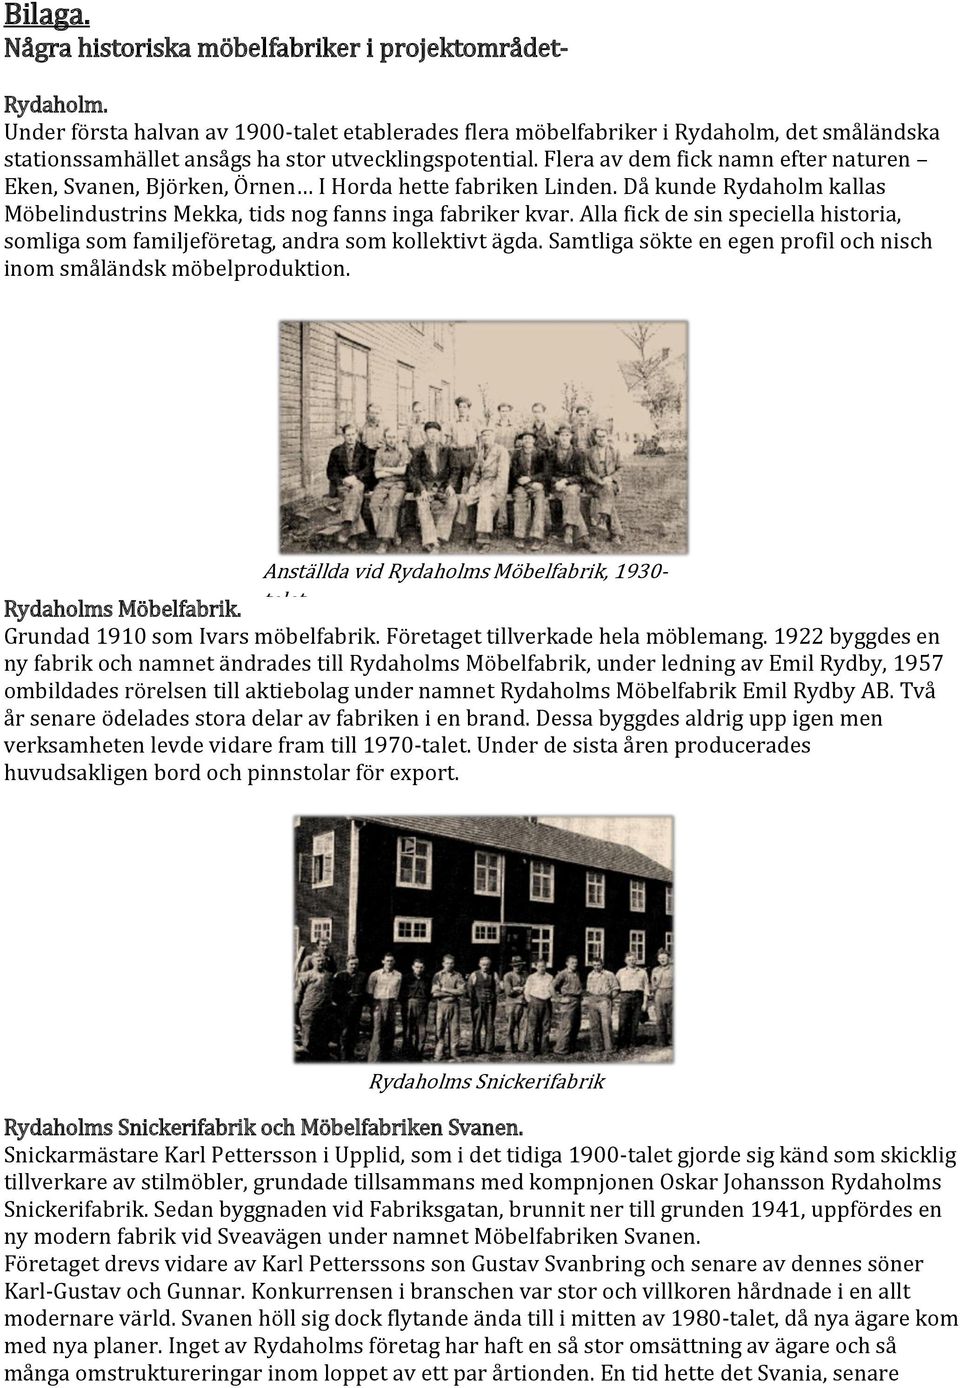 Flera av dem fick namn efter naturen Eken, Svanen, Björken, Örnen I Horda hette fabriken Linden. Då kunde Rydaholm kallas Möbelindustrins Mekka, tids nog fanns inga fabriker kvar.